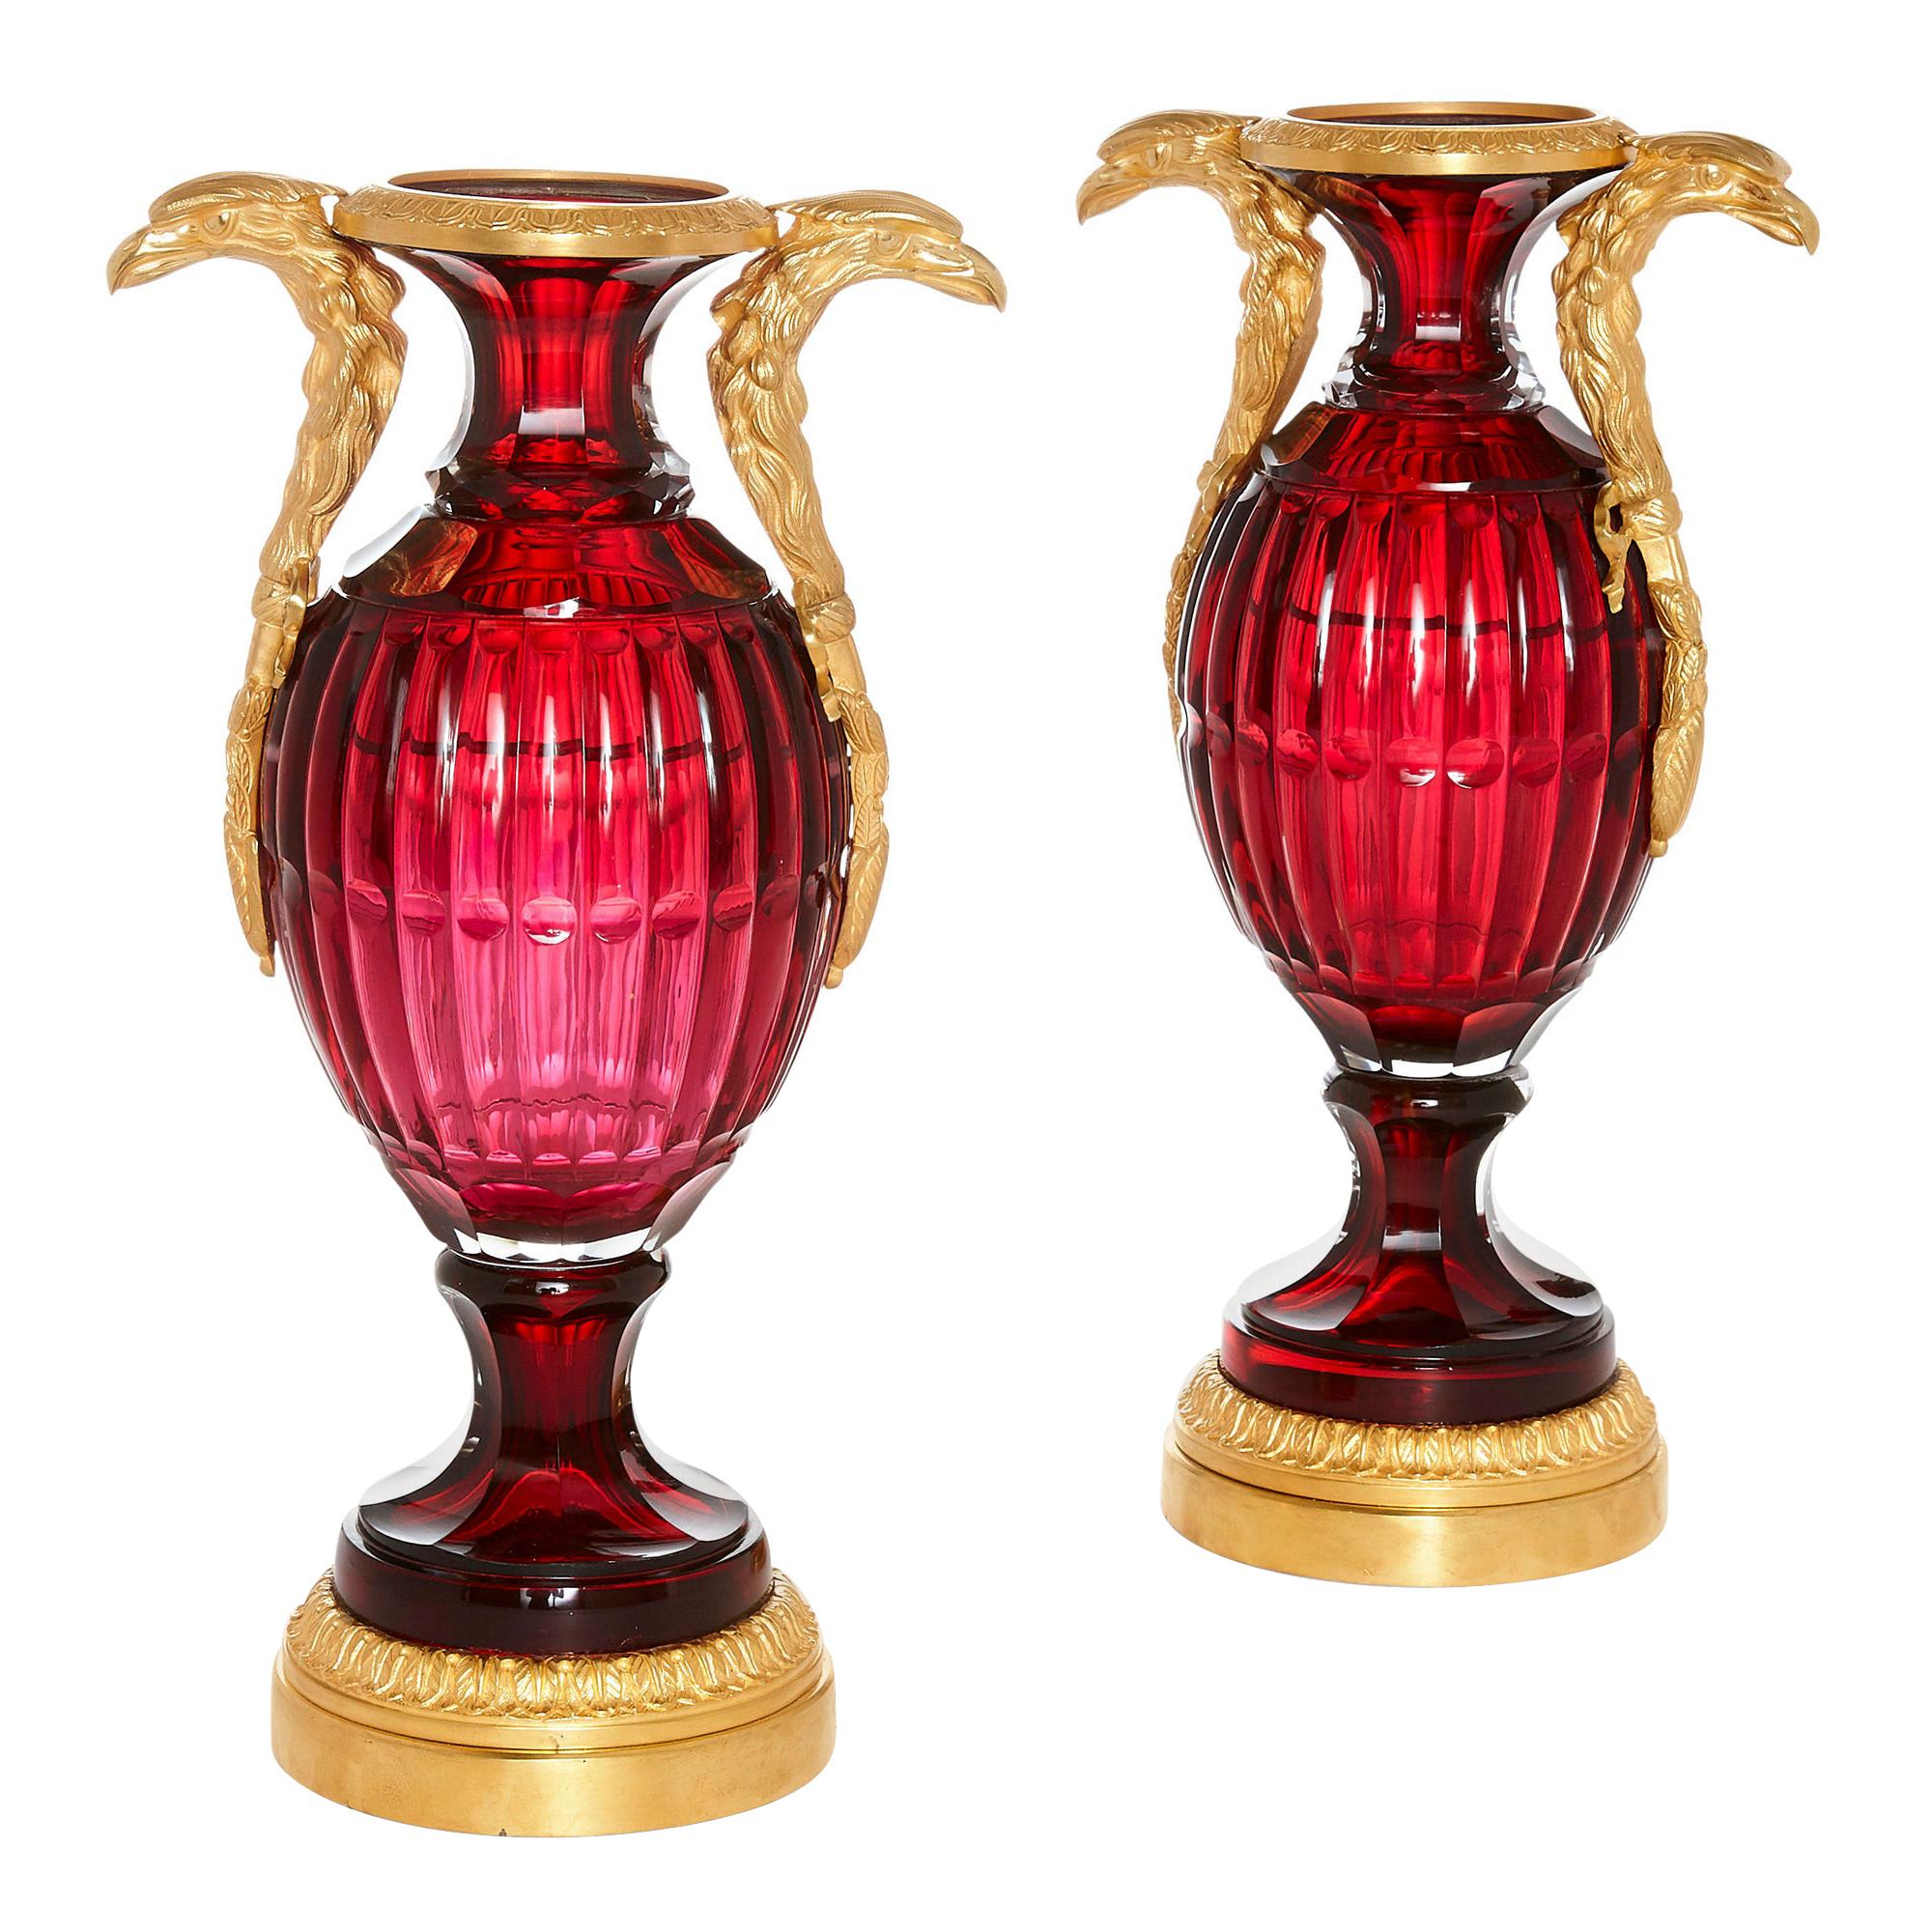 Neoklassizistische Vasen aus russischem geschliffenem Glas und Goldbronze im neoklassischen Stil